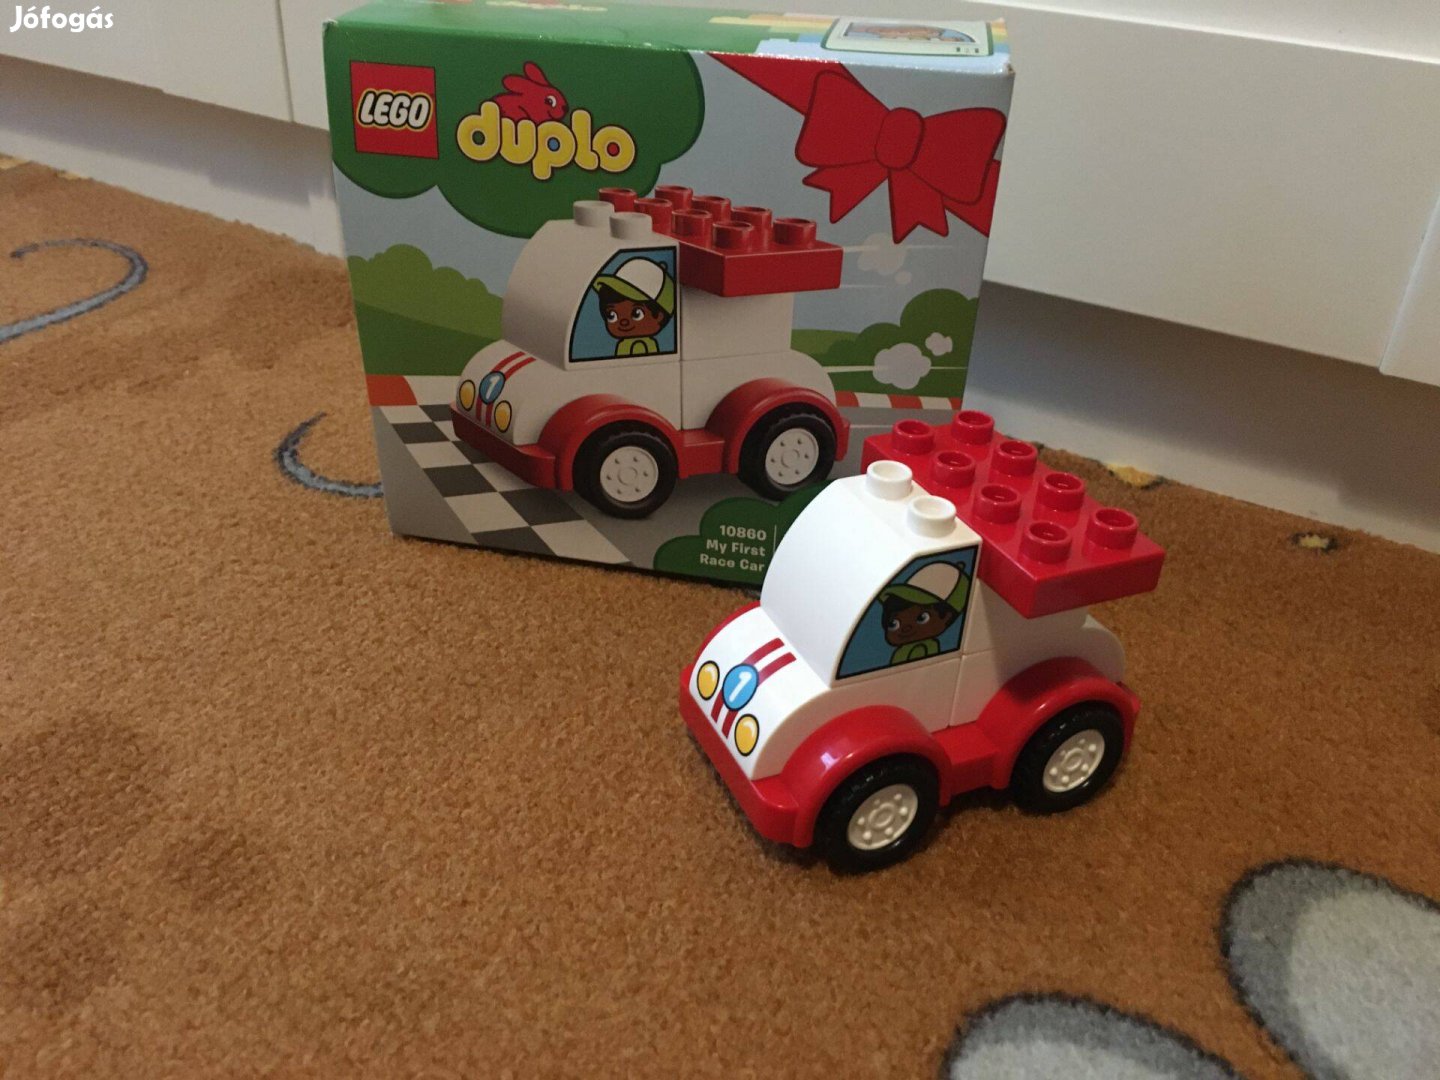 Lego Duplo 10860 Első versenyautóm!